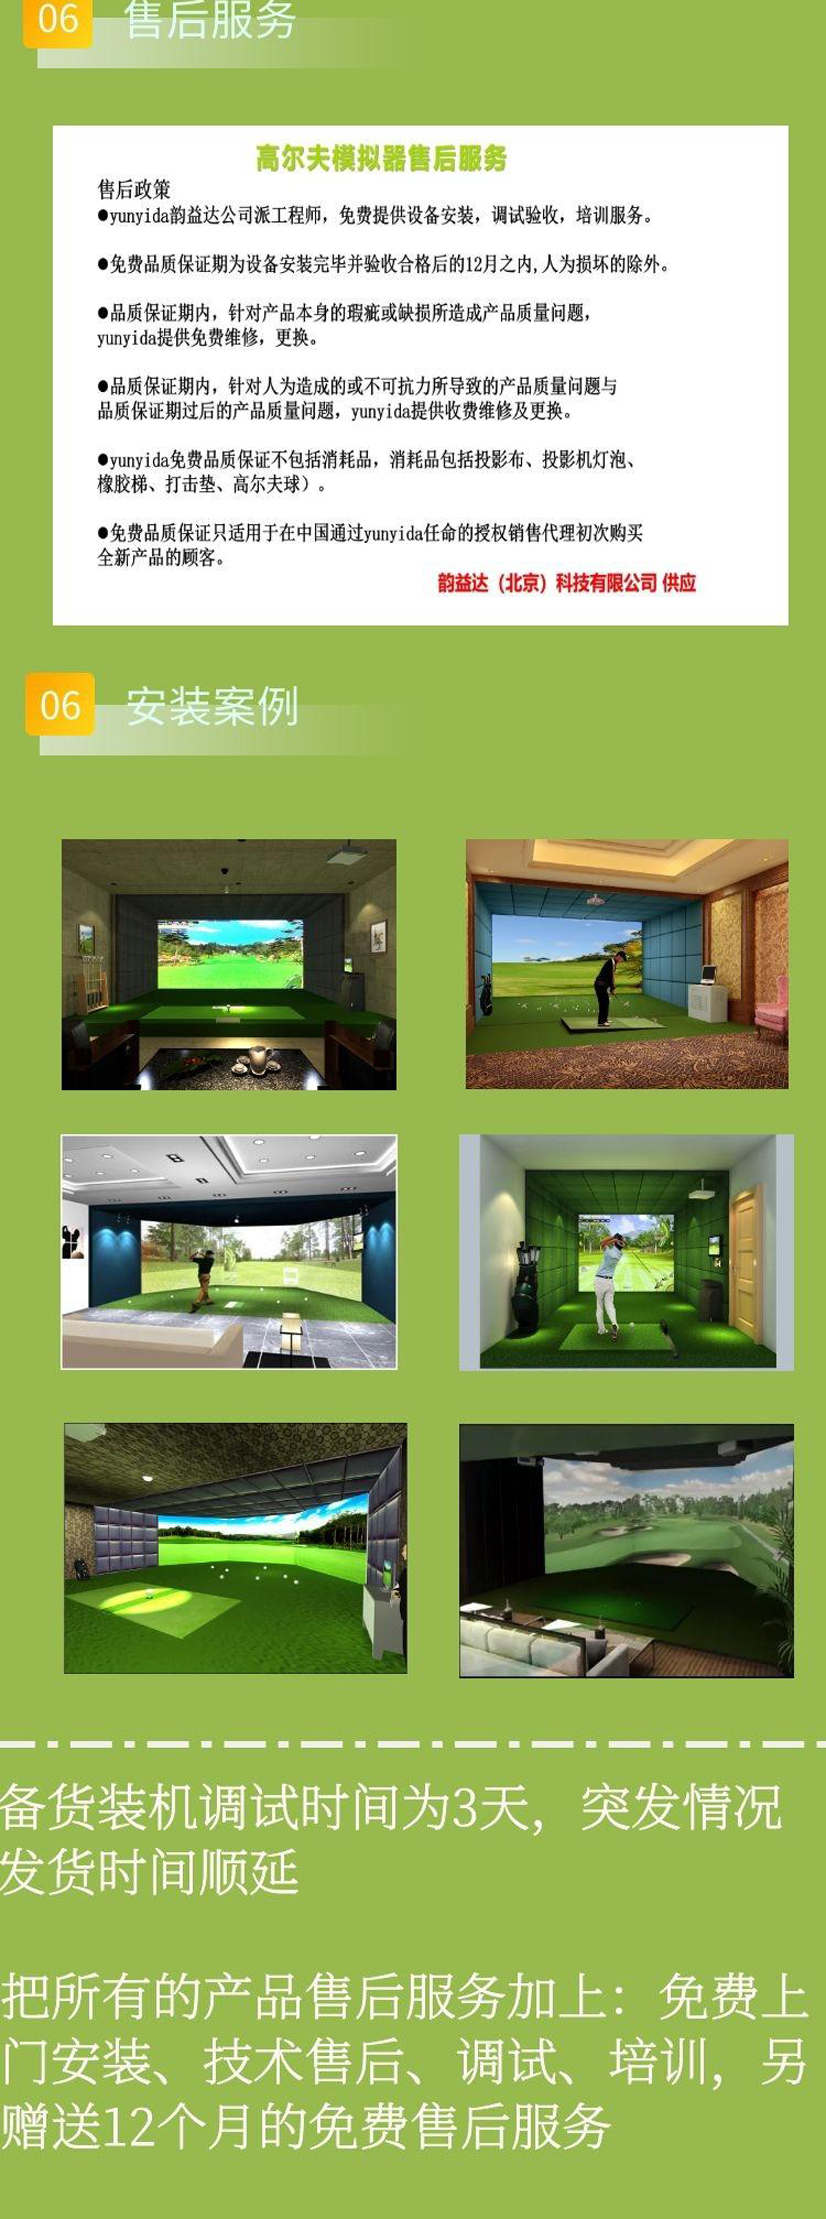 室内模拟高尔夫3.jpg